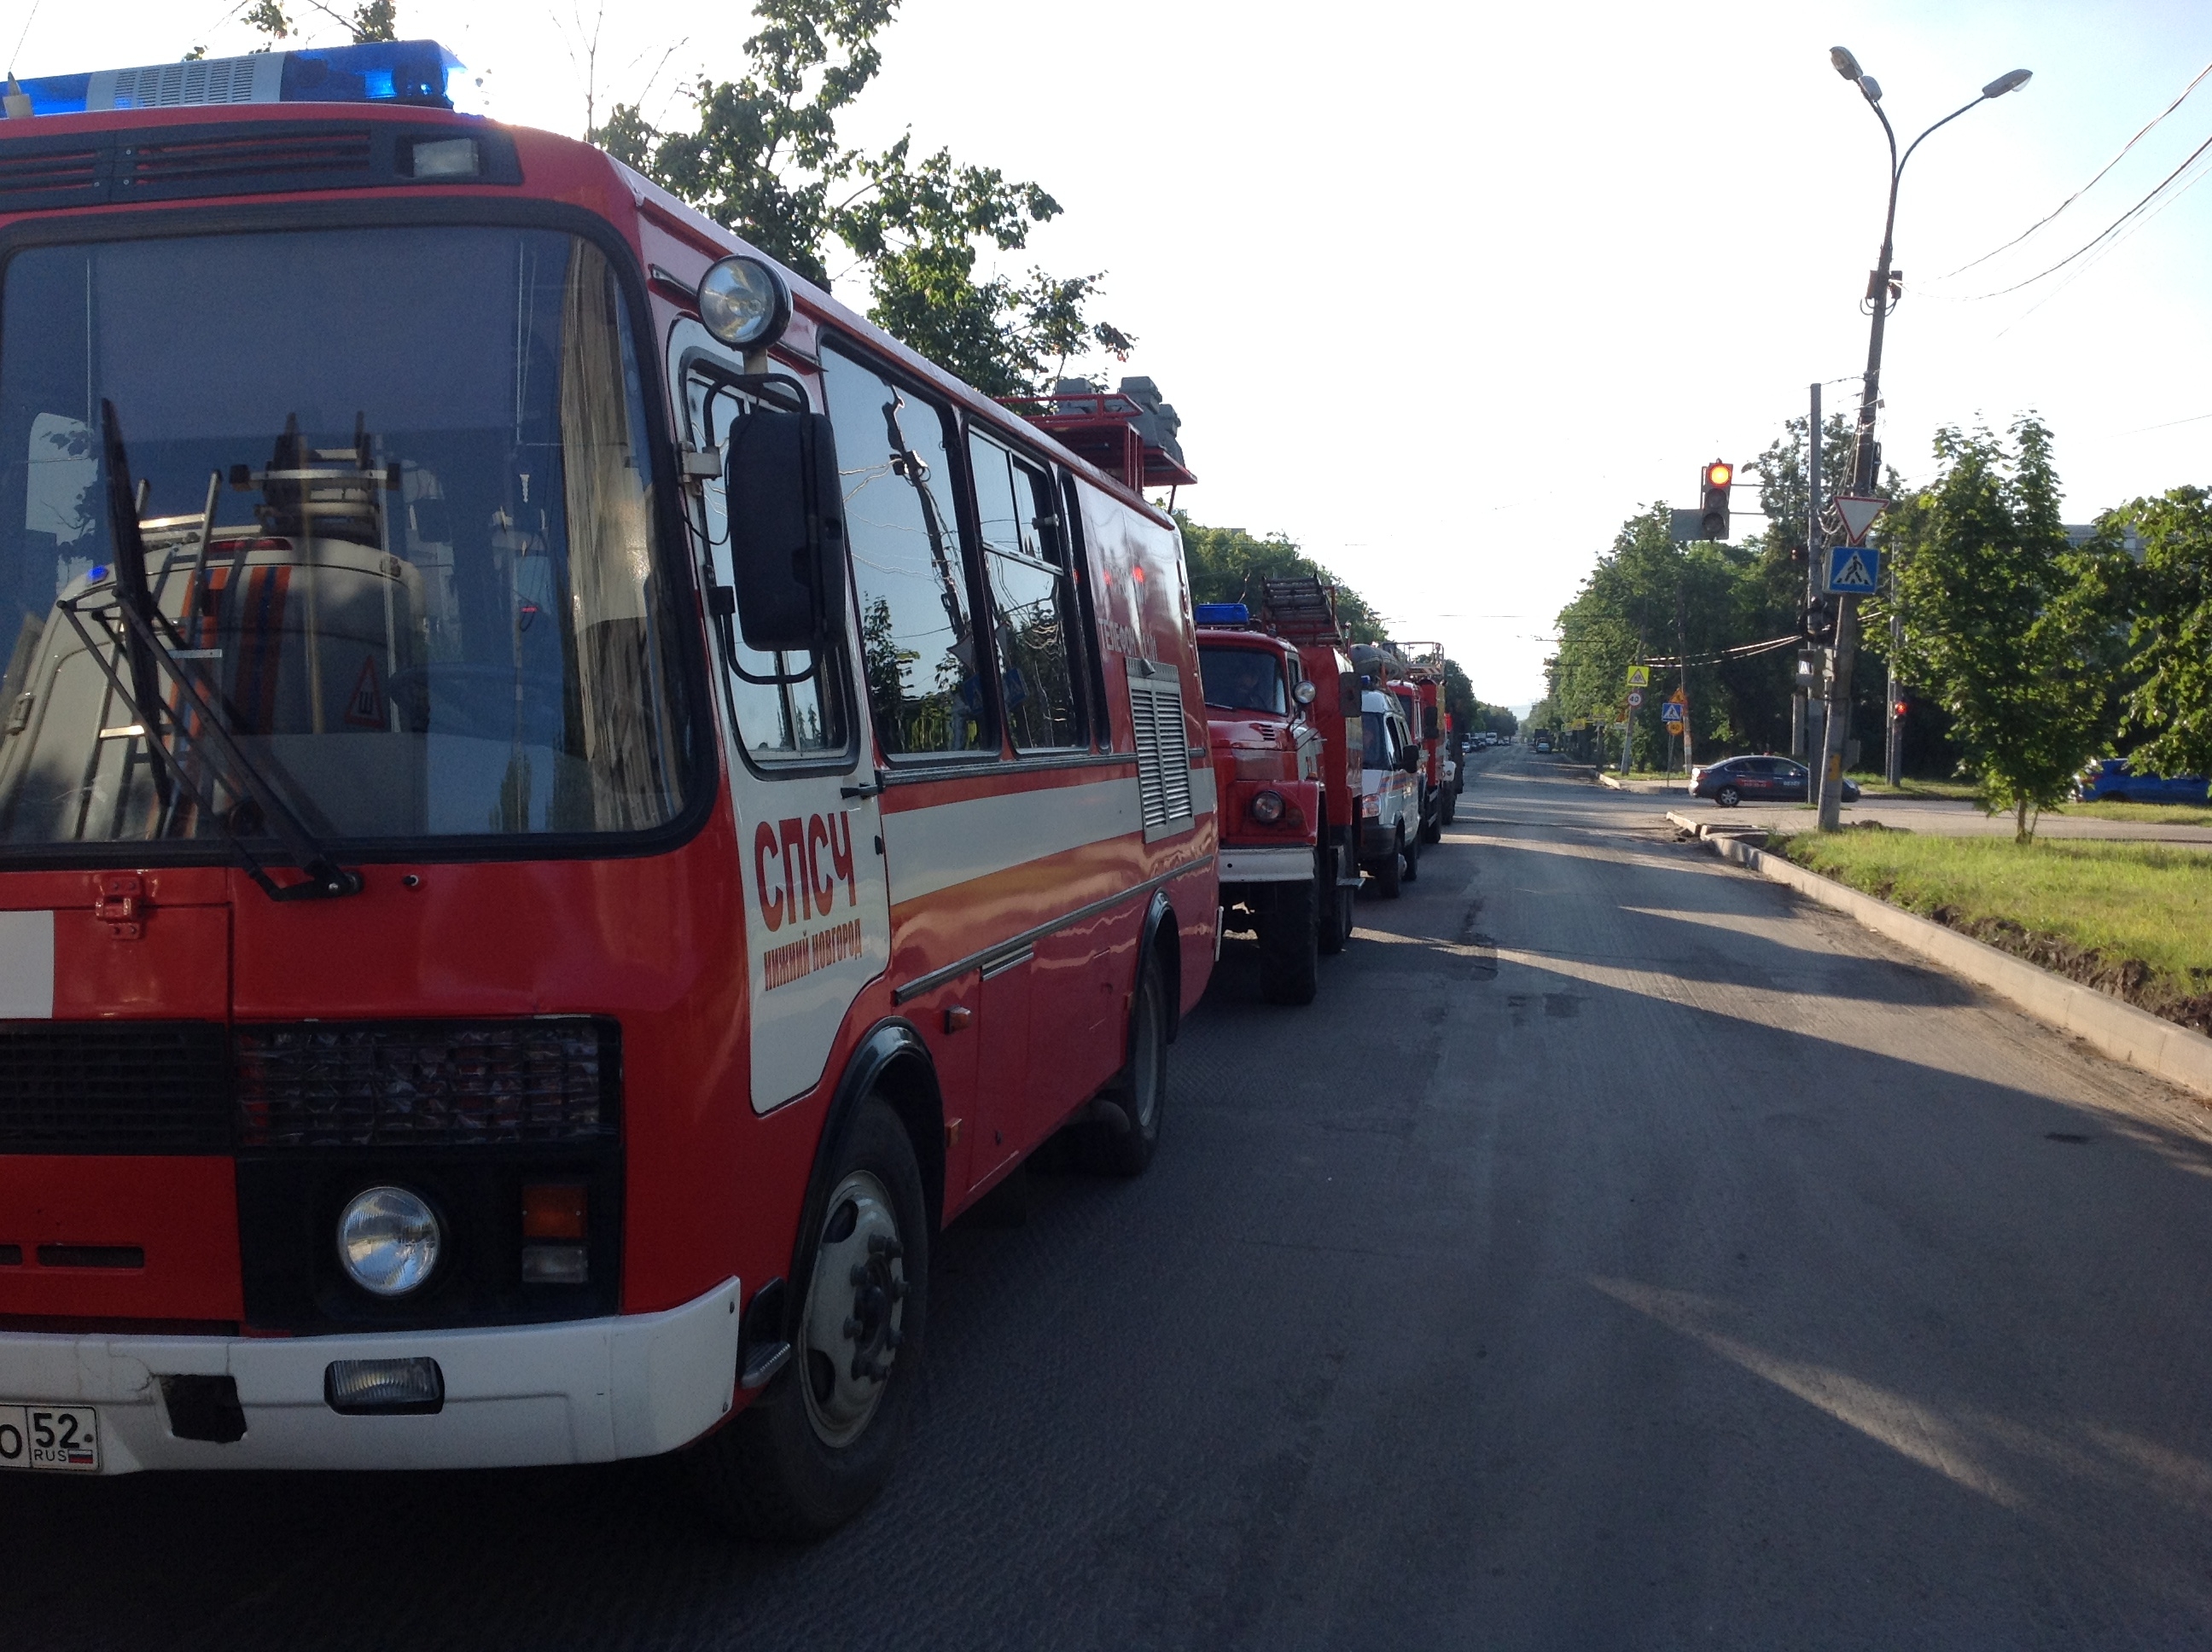 Взрыв газовоздушной смеси произошел в многоэтажке в Нижнем Новгороде